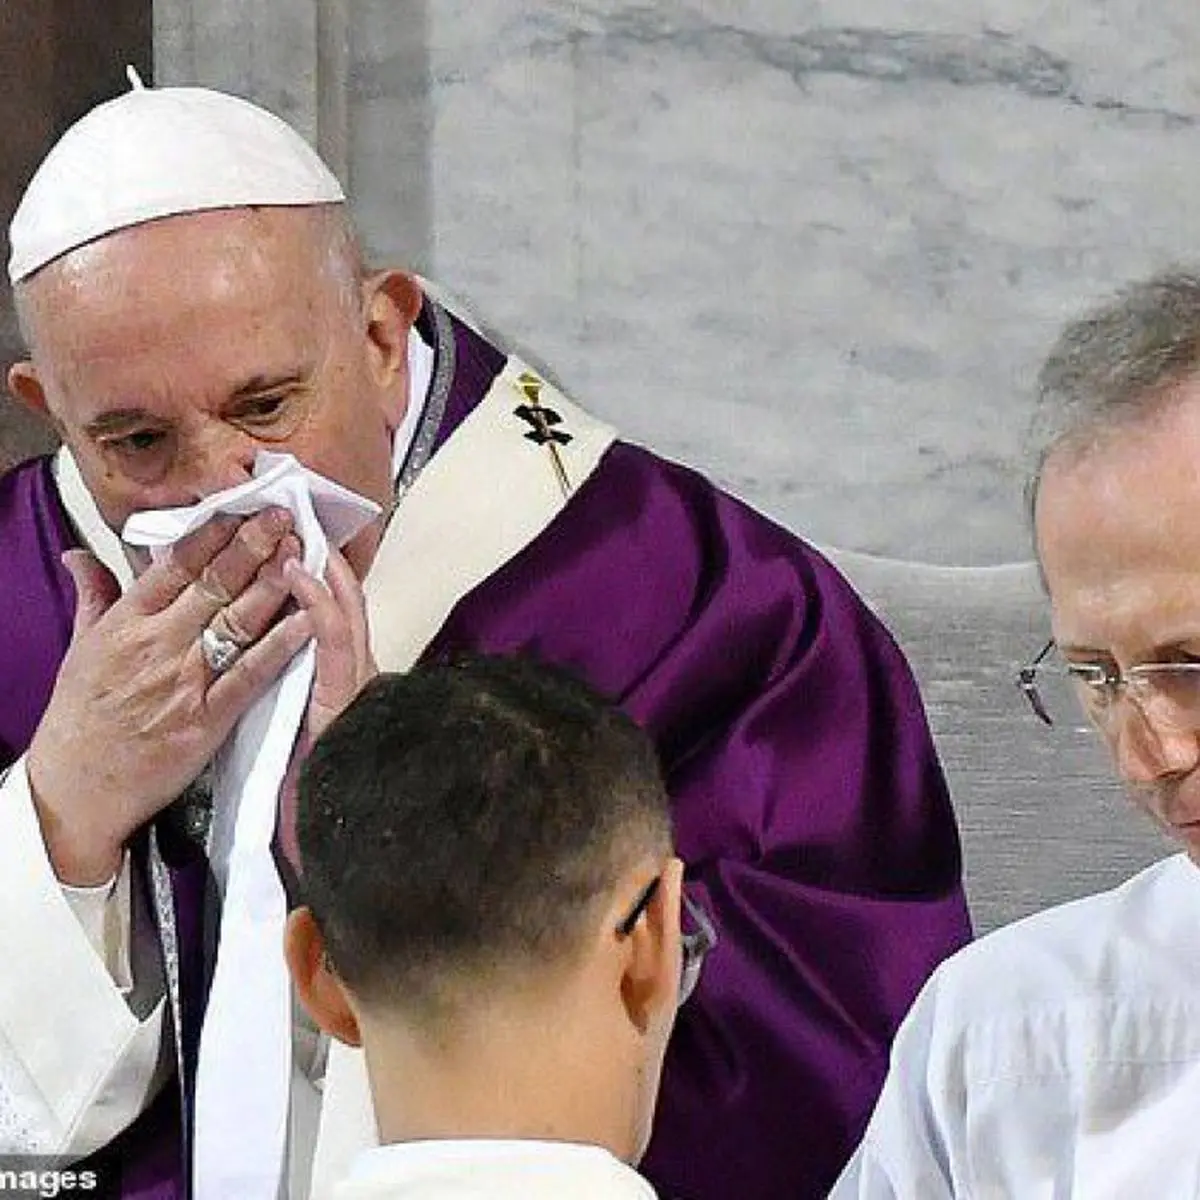 پاپ حضور در تجمعات عمومی را لغو کرد